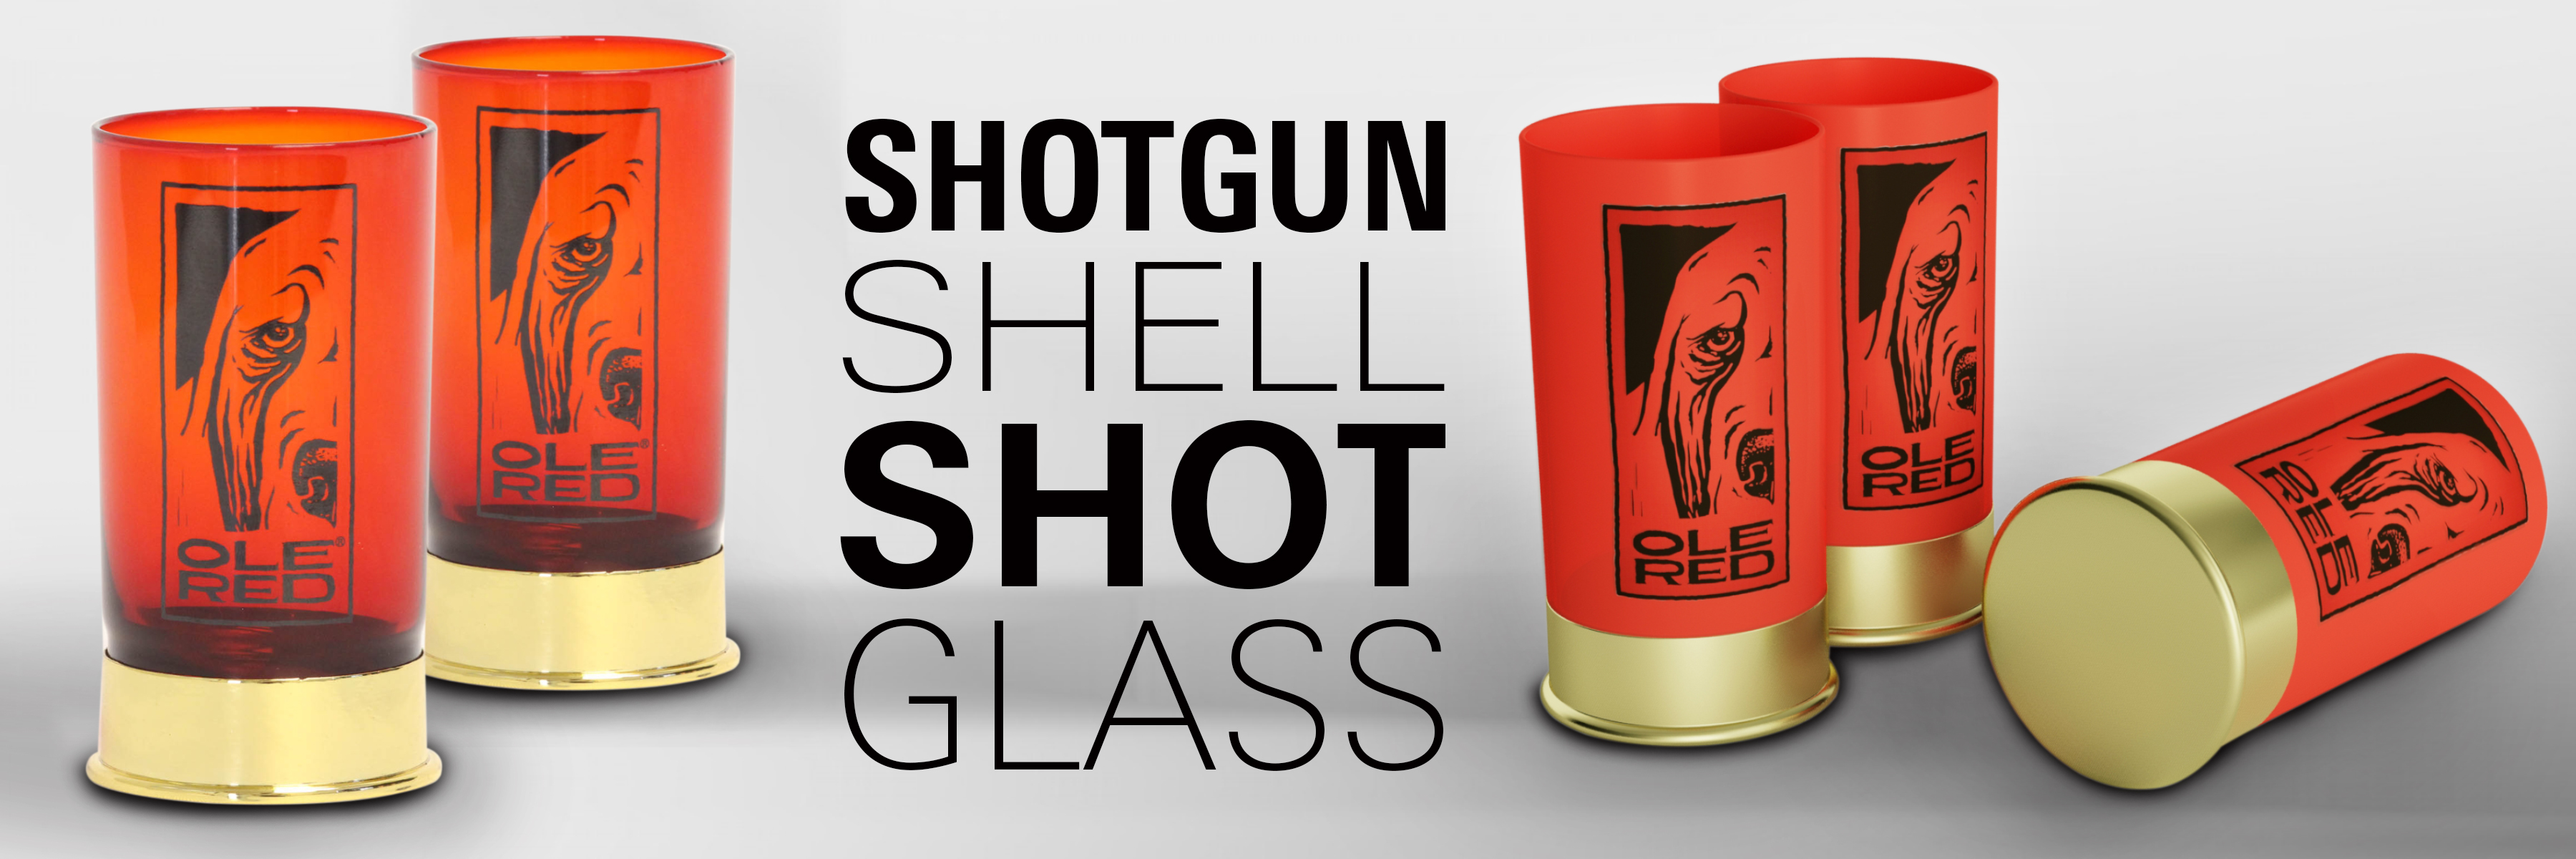 Shotgun Shell Shot Glass | Shot Glasses | Drinkware - Custom Branded ...